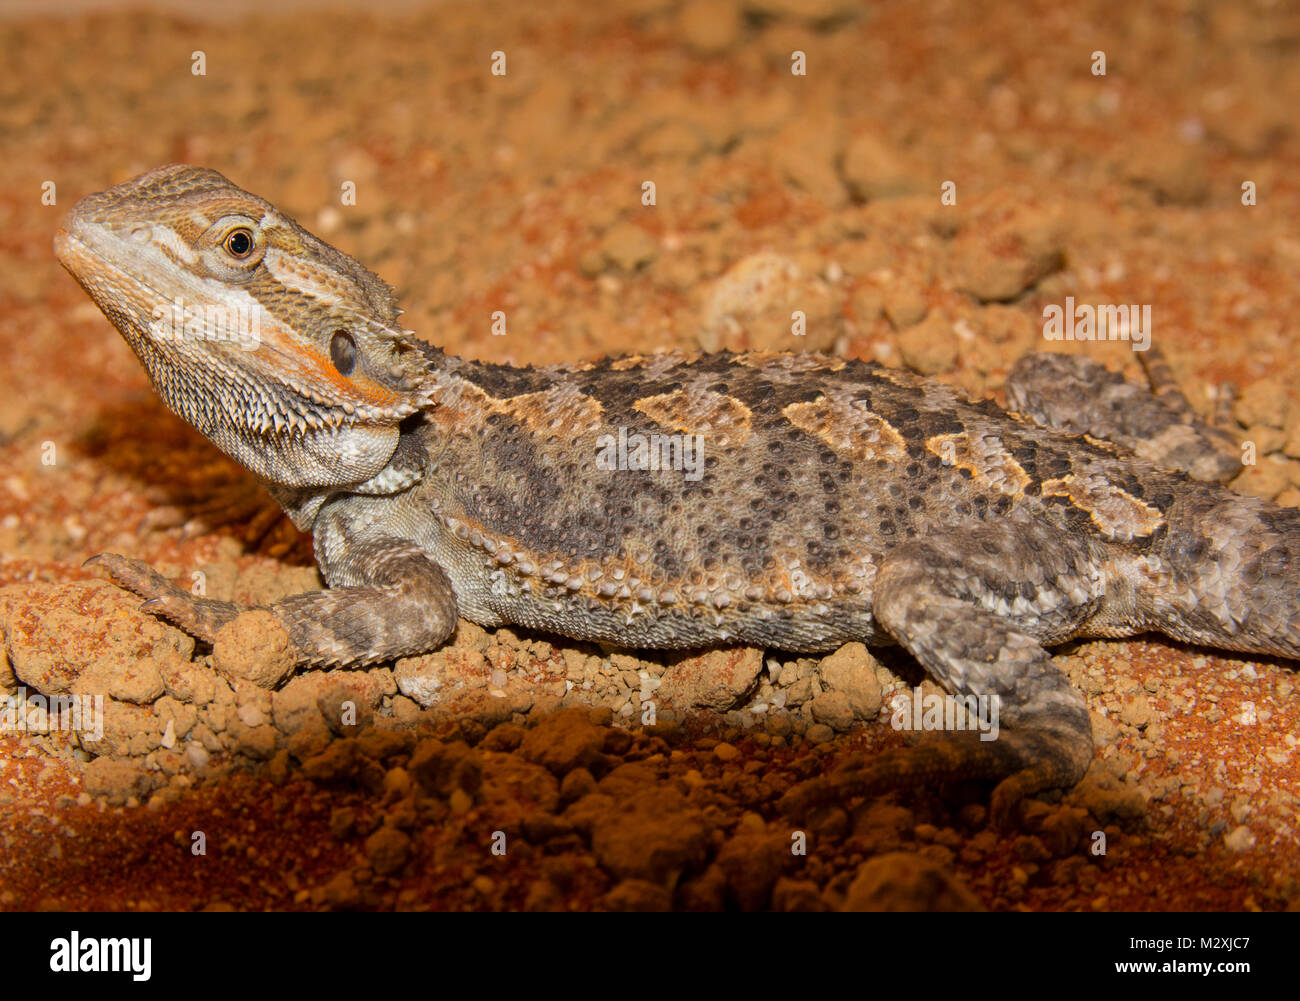 Männliche Bartagame Pogona Arten auf eine Orange sand Substrat gut aussehende männliche dieses beliebten Reptilien Haustier. Stockfoto